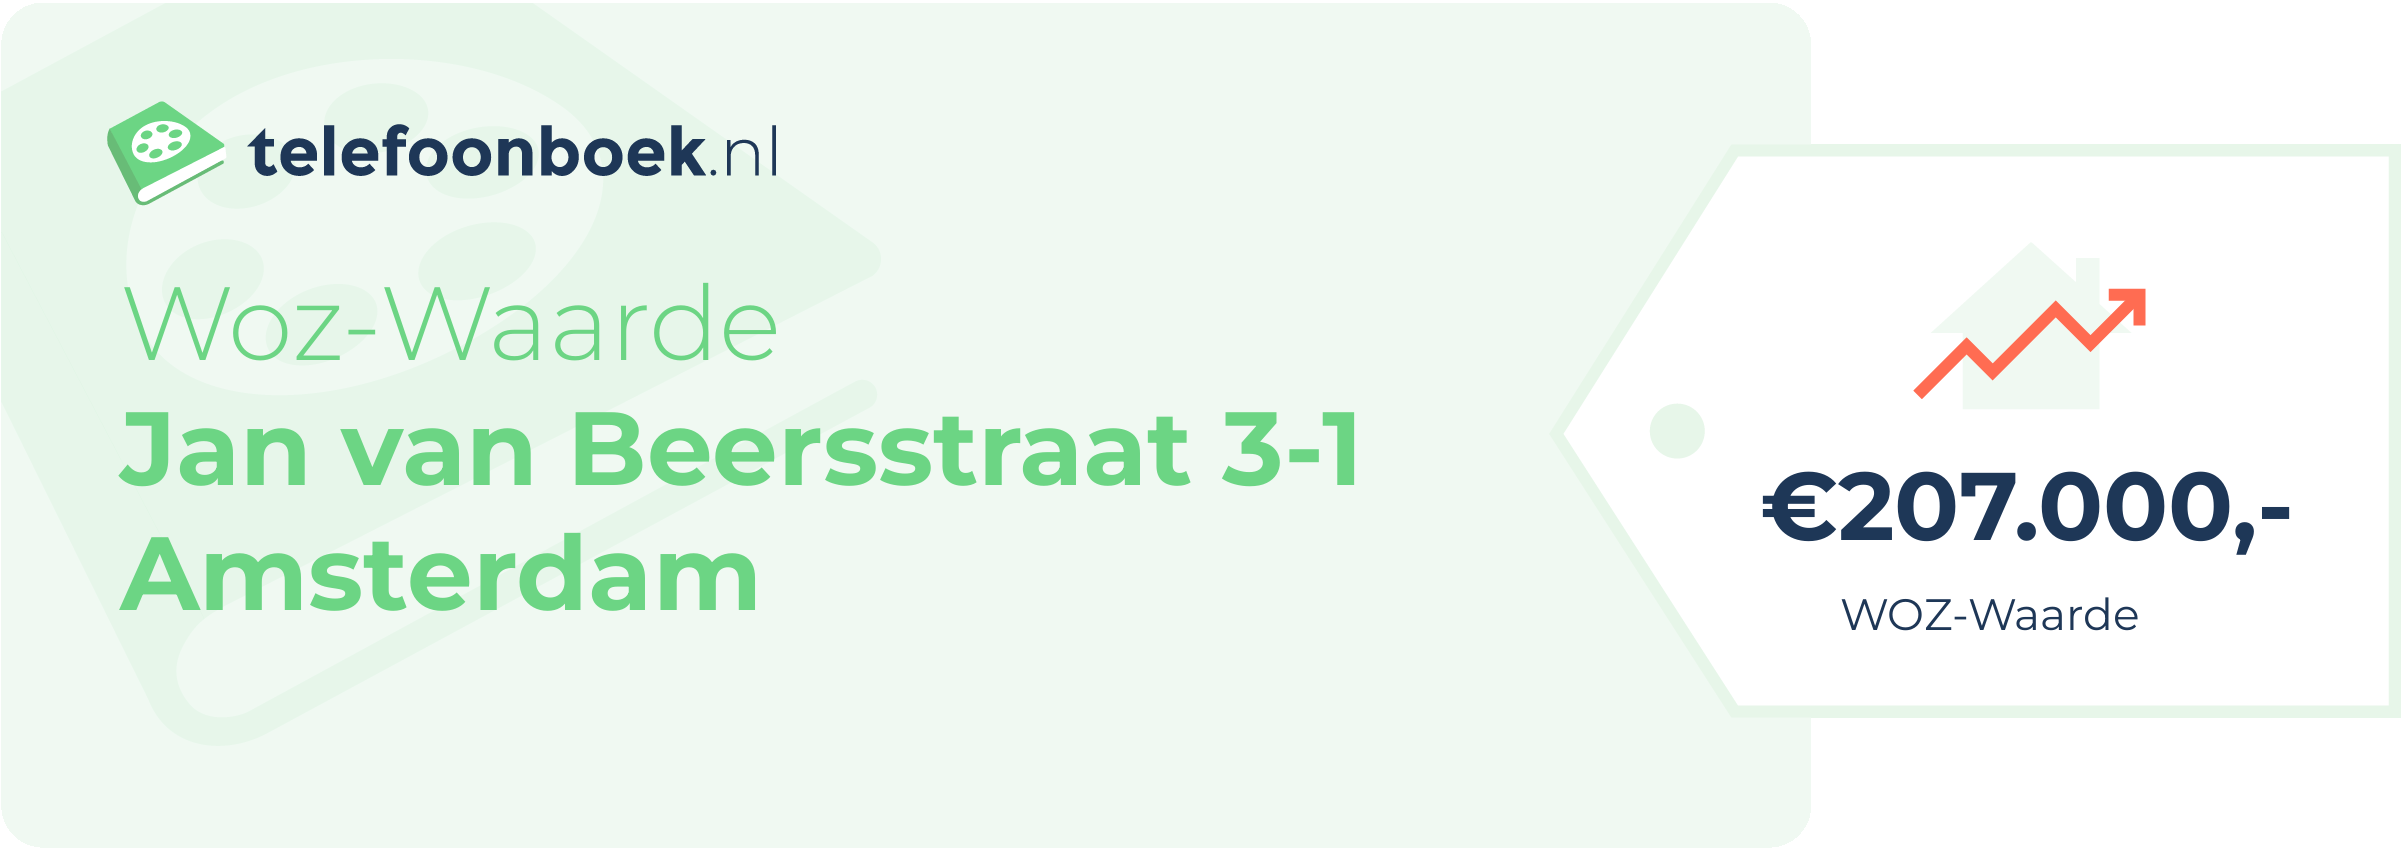 WOZ-waarde Jan Van Beersstraat 3-1 Amsterdam